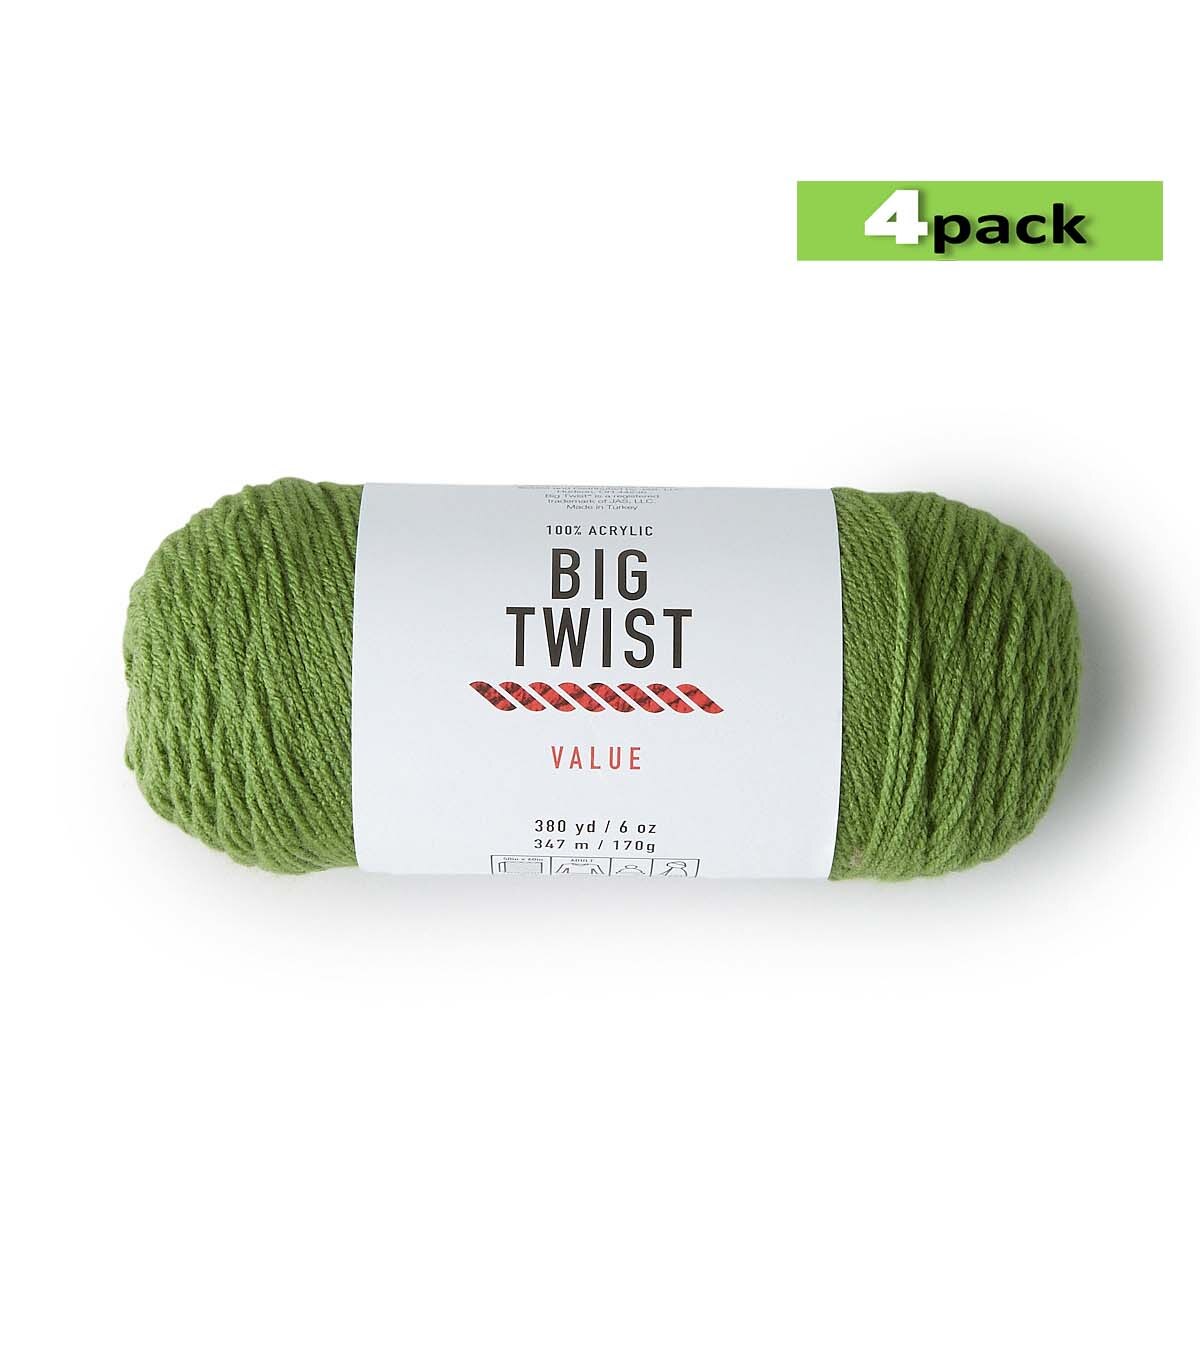 4pk Solid Green Medium Weight Acrylic 380yd Value Yarn by Big Twist | JOANN